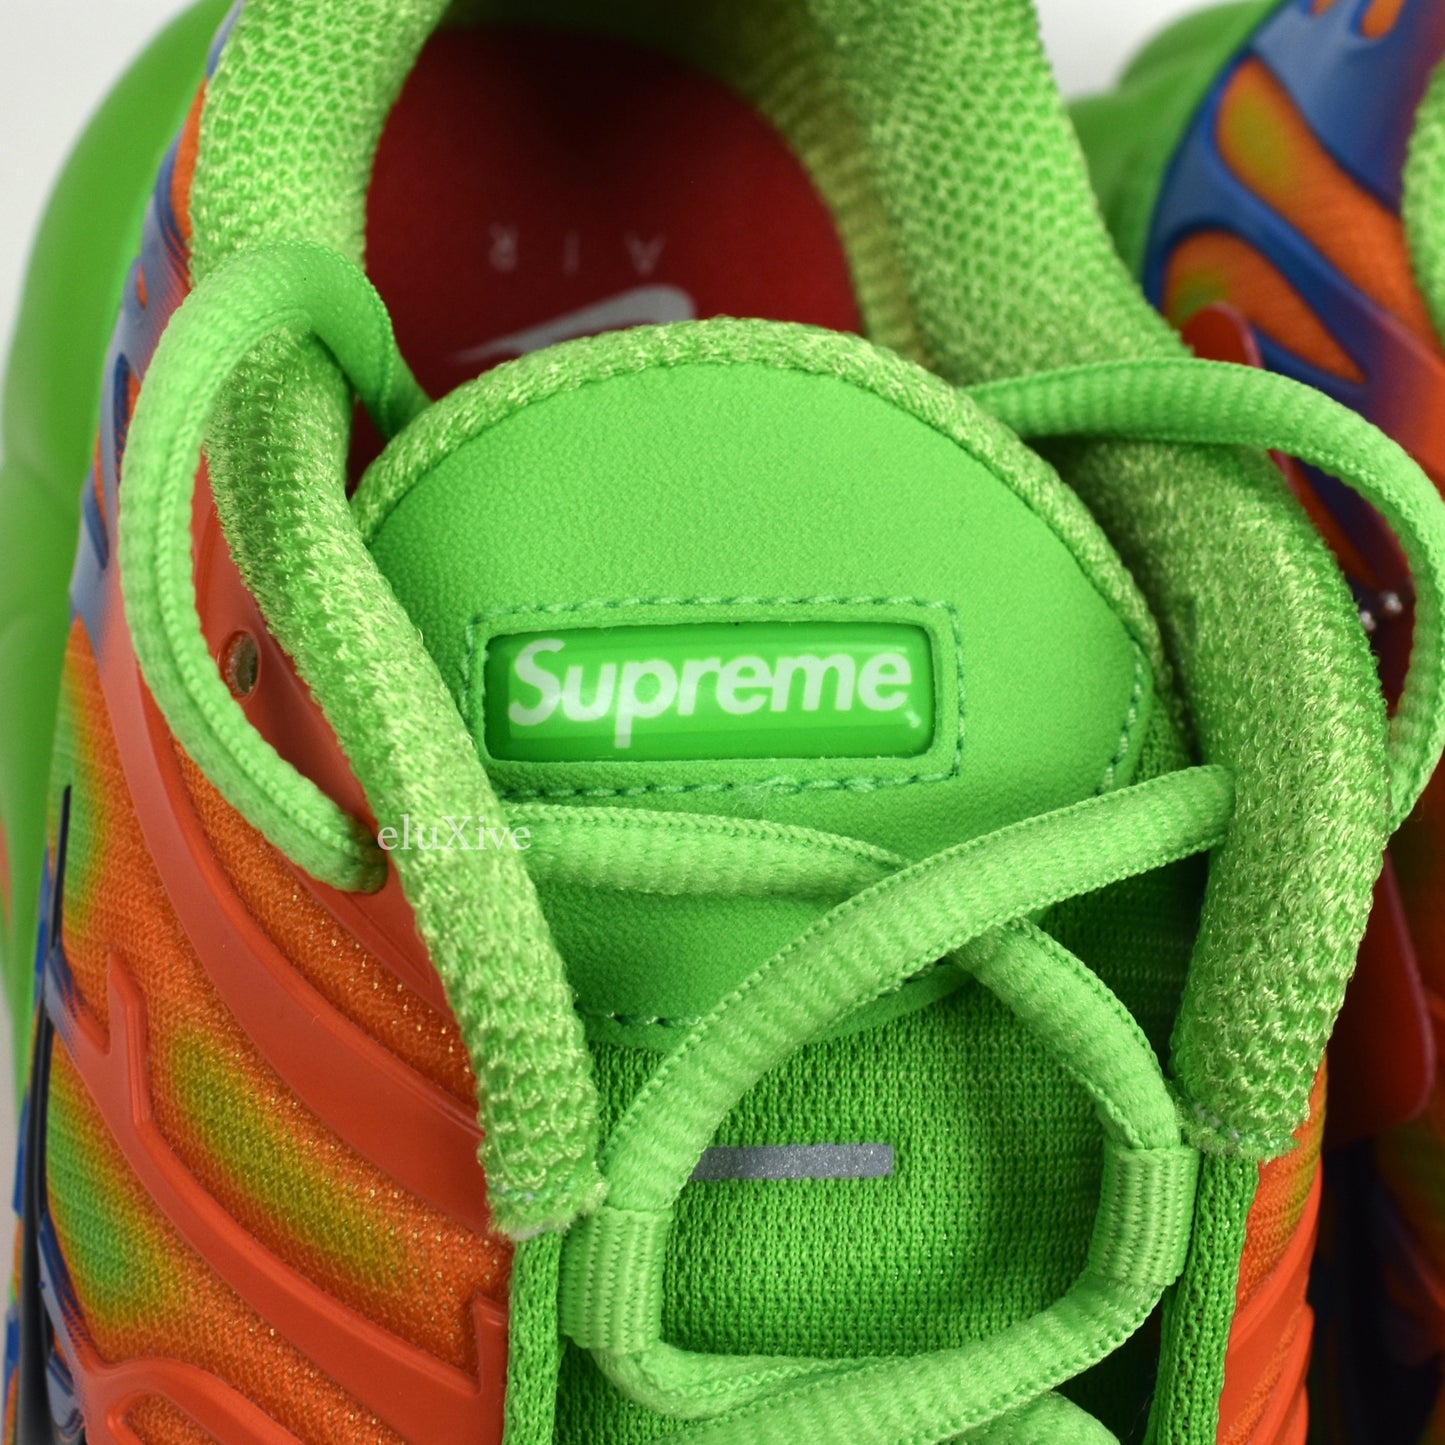 Supreme x Nike - Air Max Plus TN 'Mean Green'